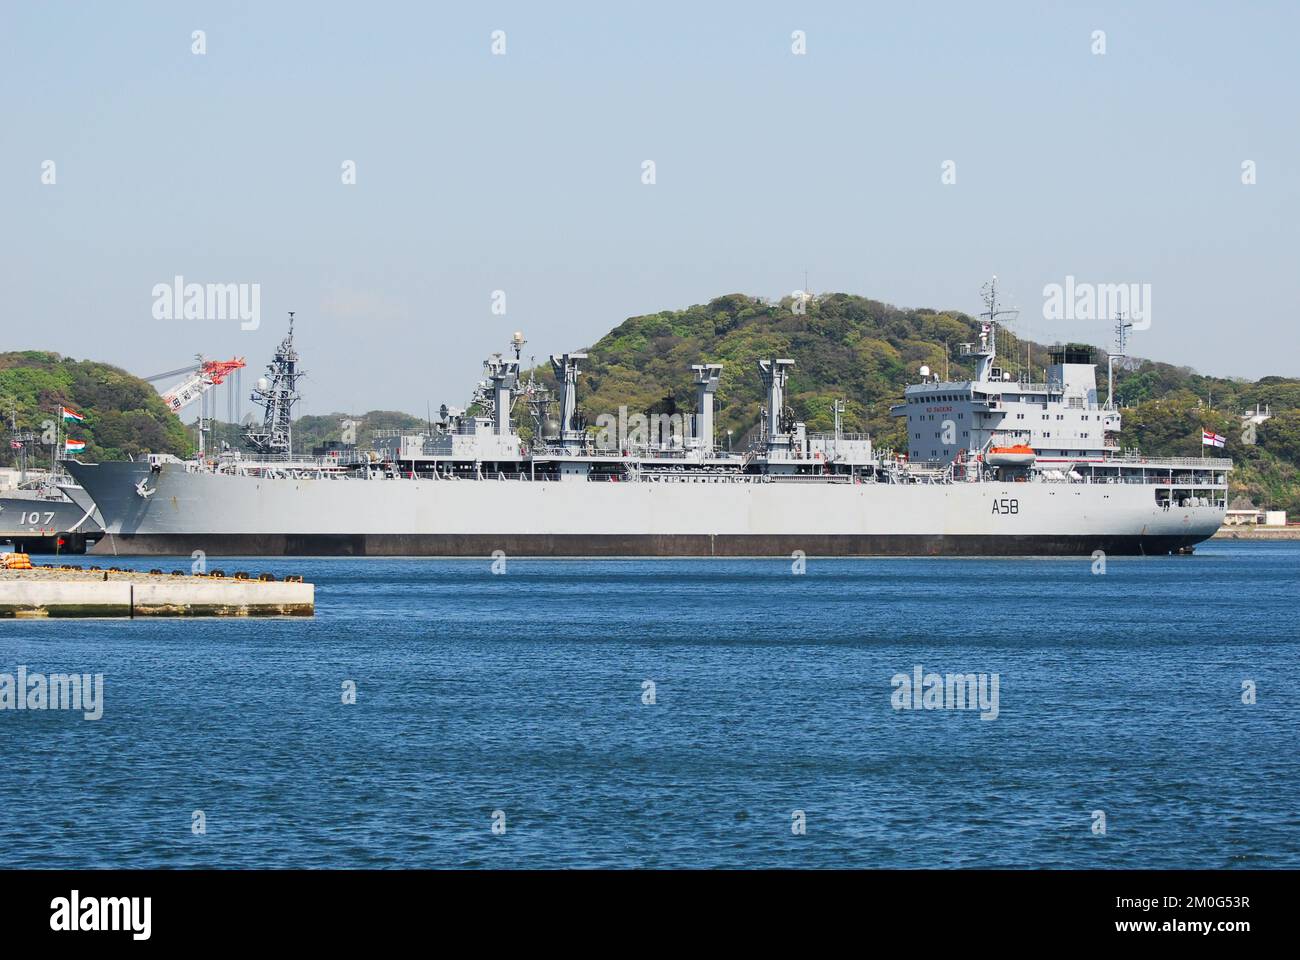 Präfektur Kanagawa, Japan - 14. April 2007: Indische Marine INS Jyoti (A58), Jyoti-Klasse Auffüllöler. Stockfoto